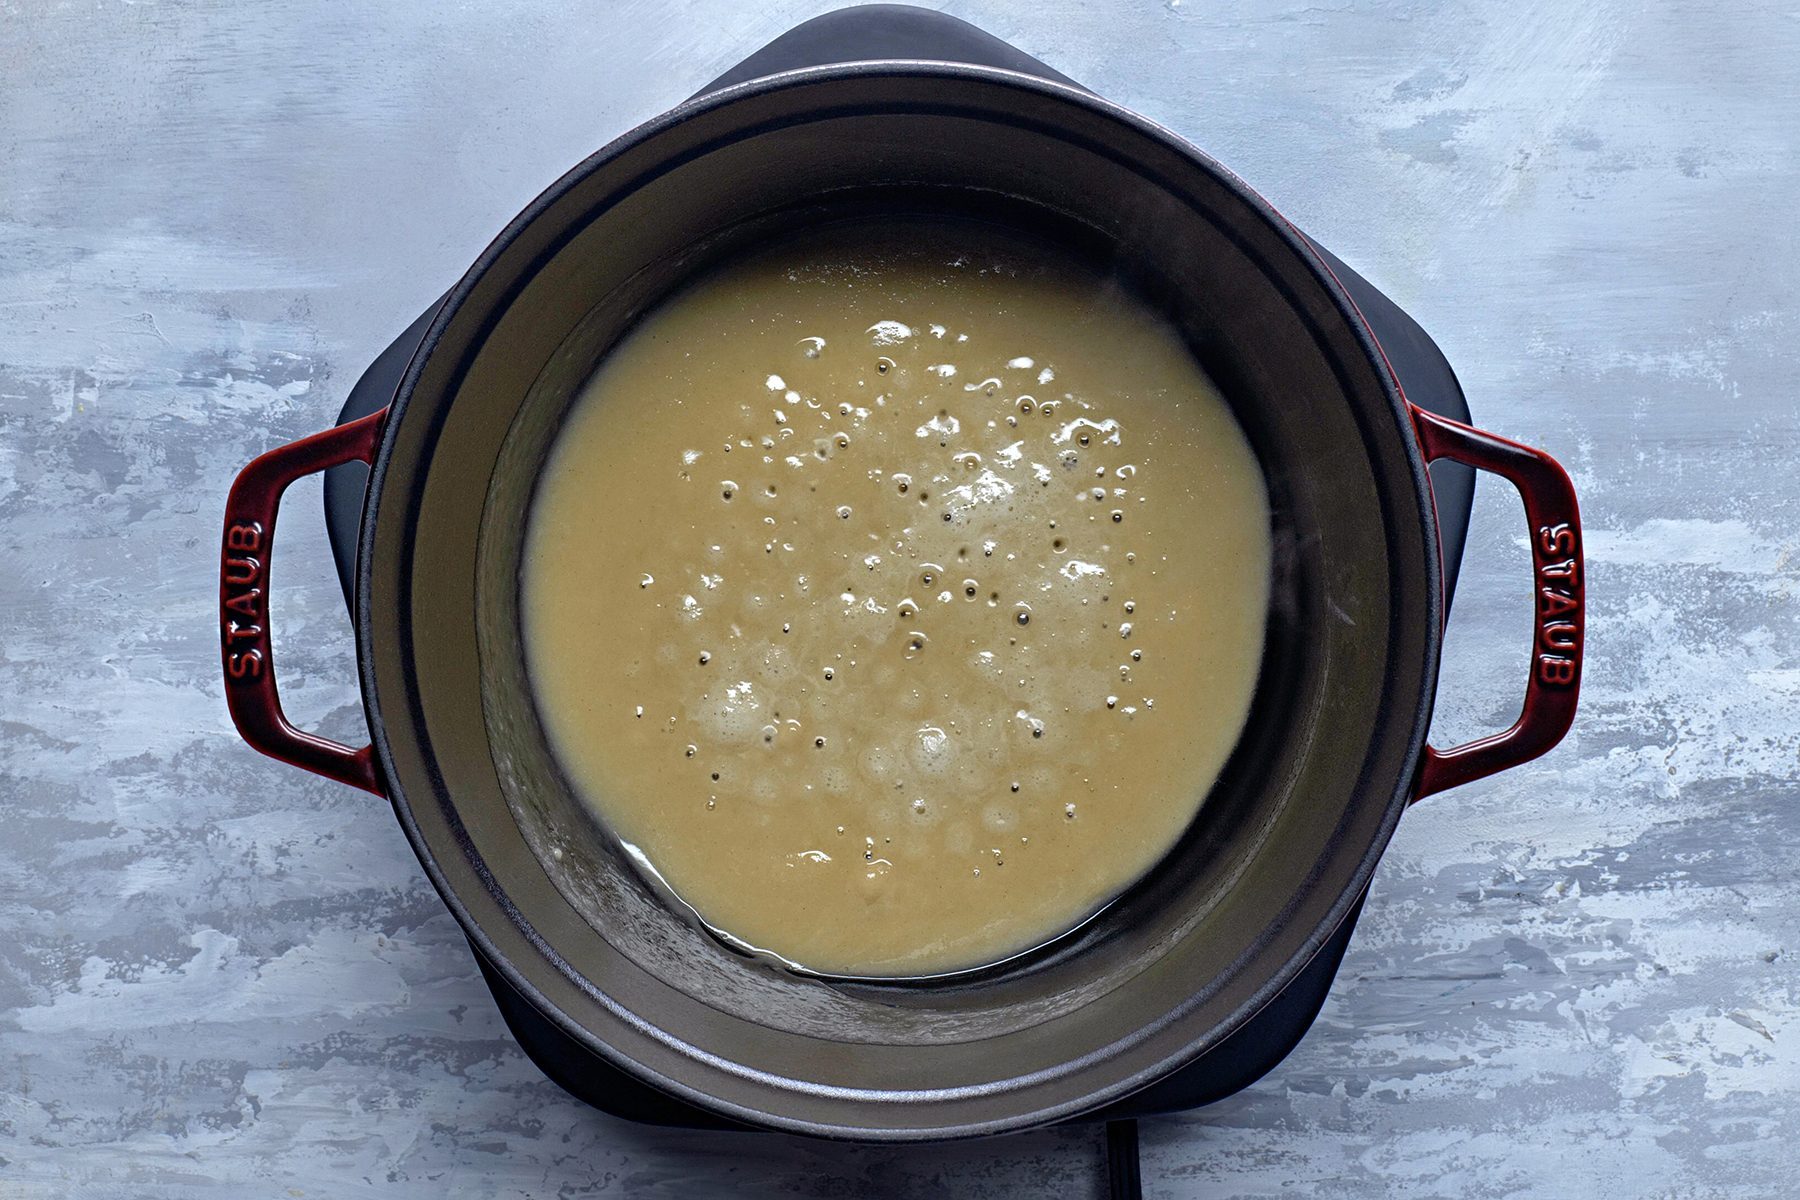 Baked Potato Soup Tohvs24 16166 Mf 06 25 4